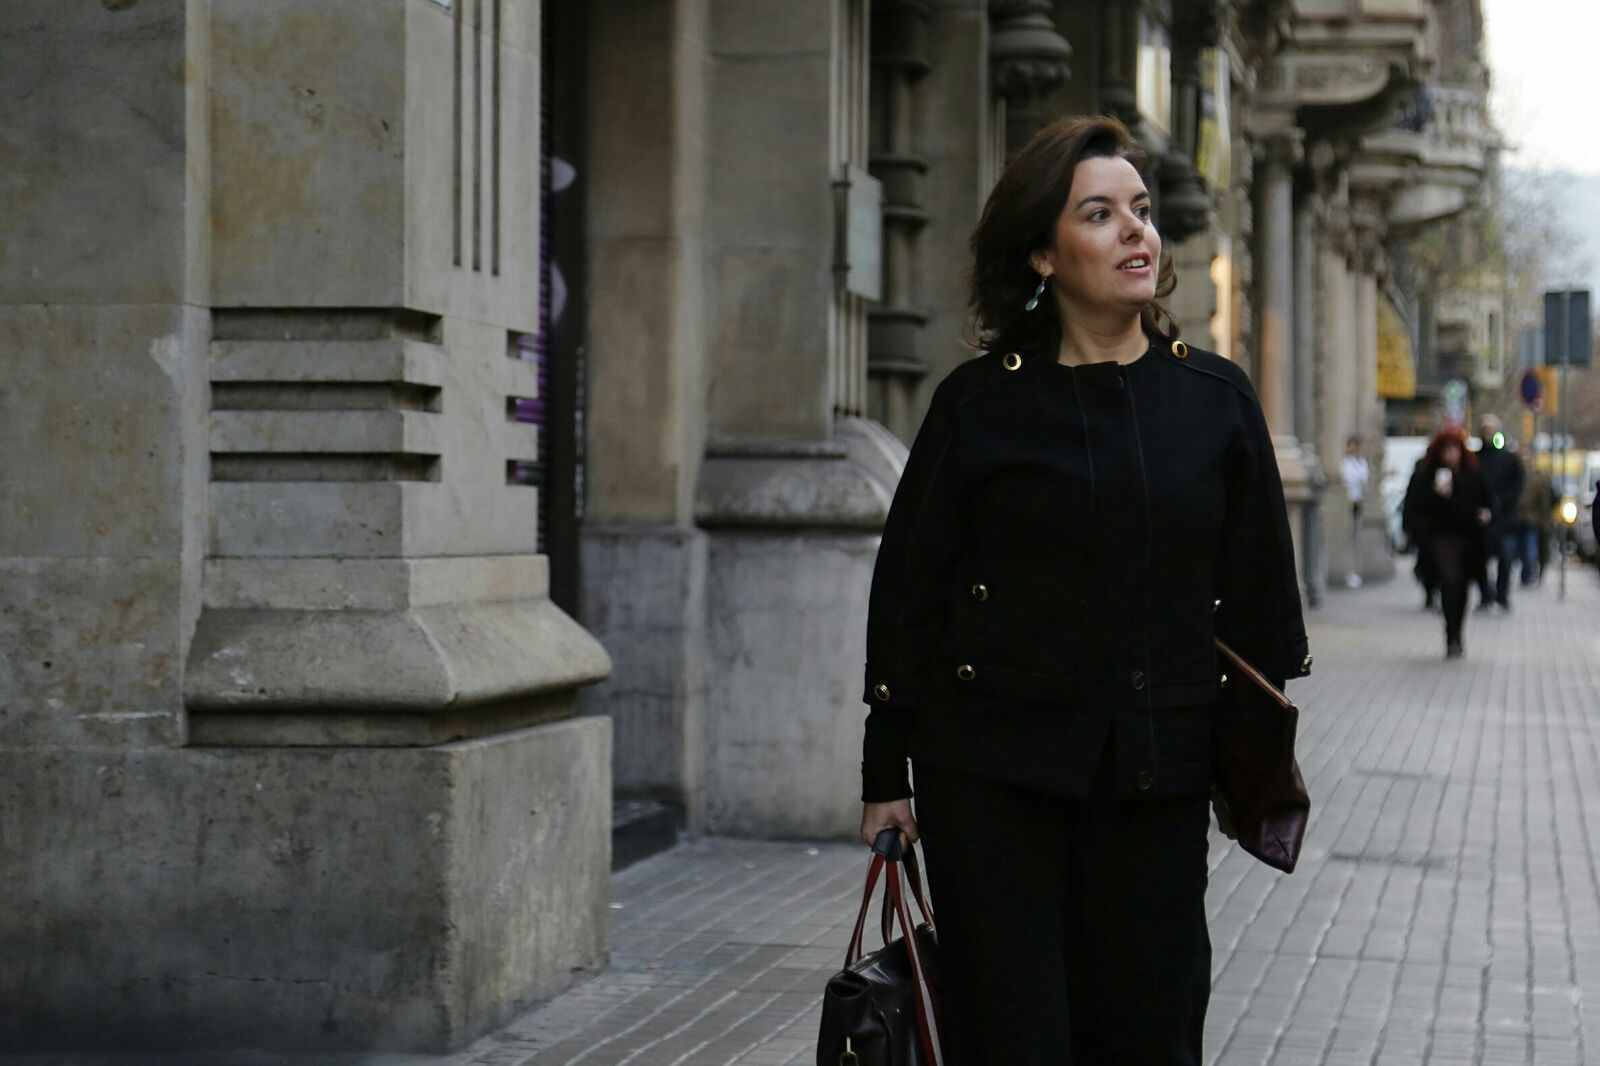 Las entidades catalanas reciben de Santamaría tan solo "buenas palabras"